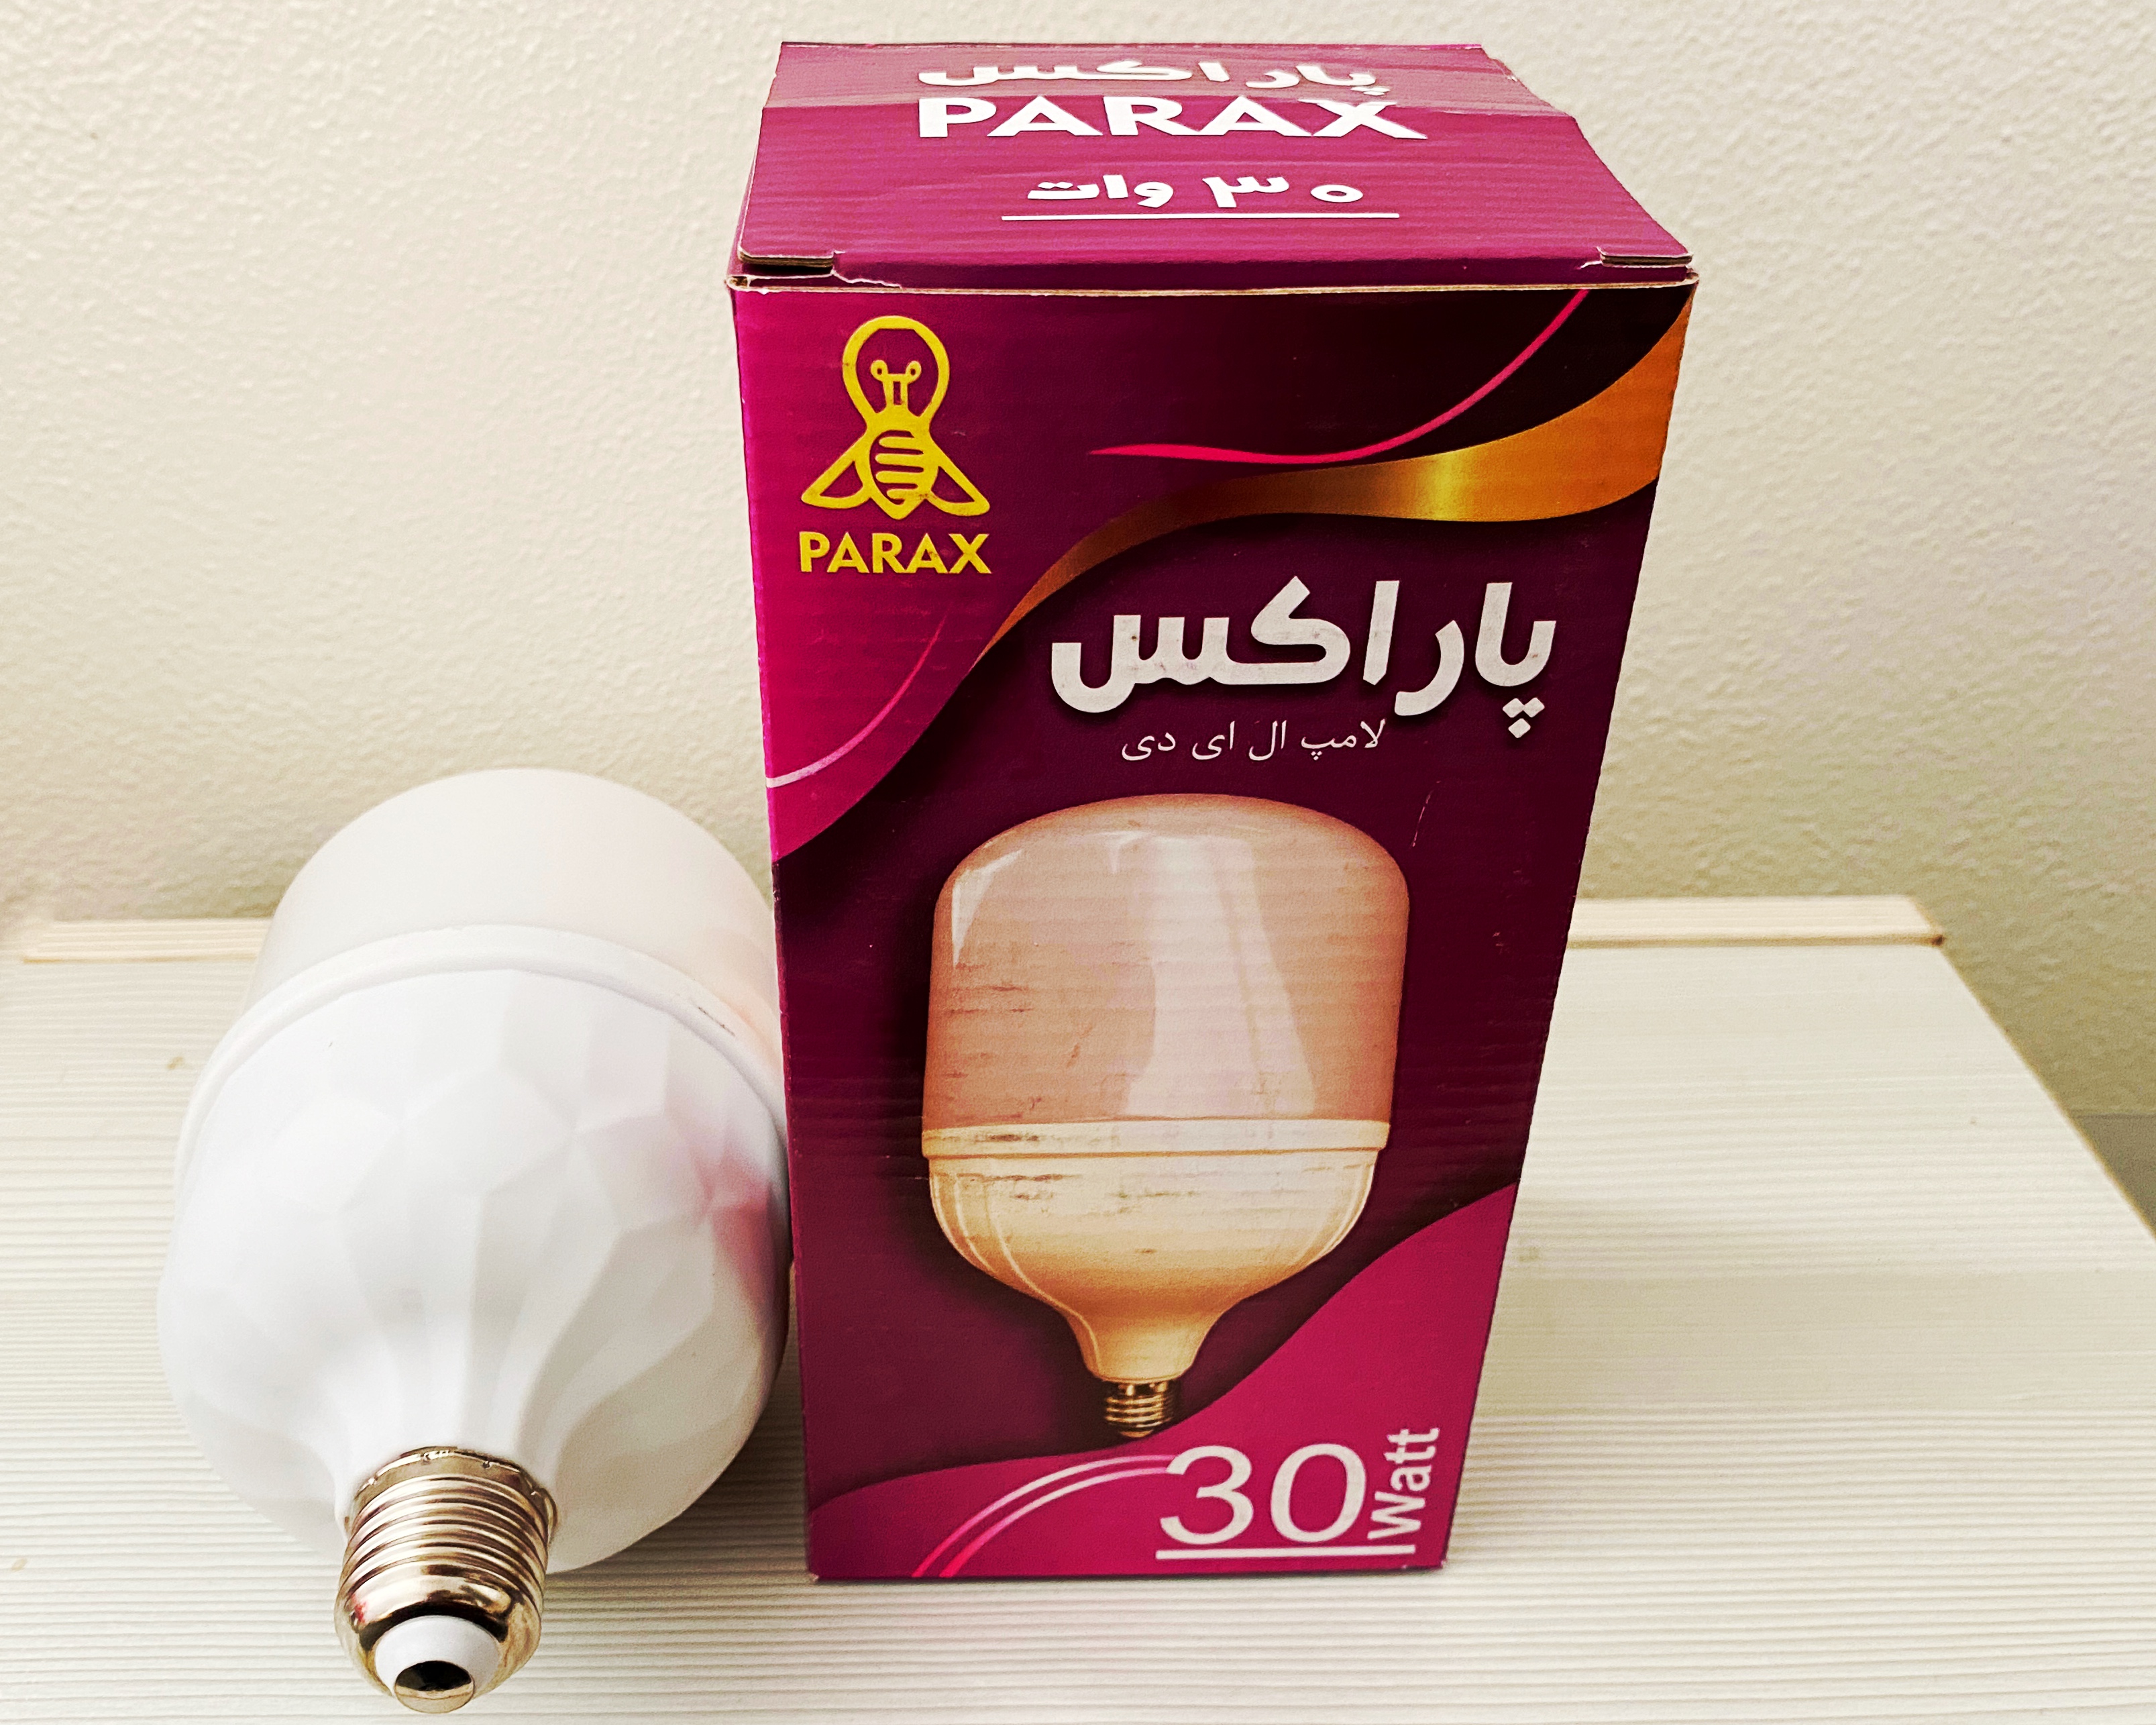 لامپ30وات پاراکس PE-30 نور سفید مهتابی پایهE27 استوانه با گارانتی سلامت کالا